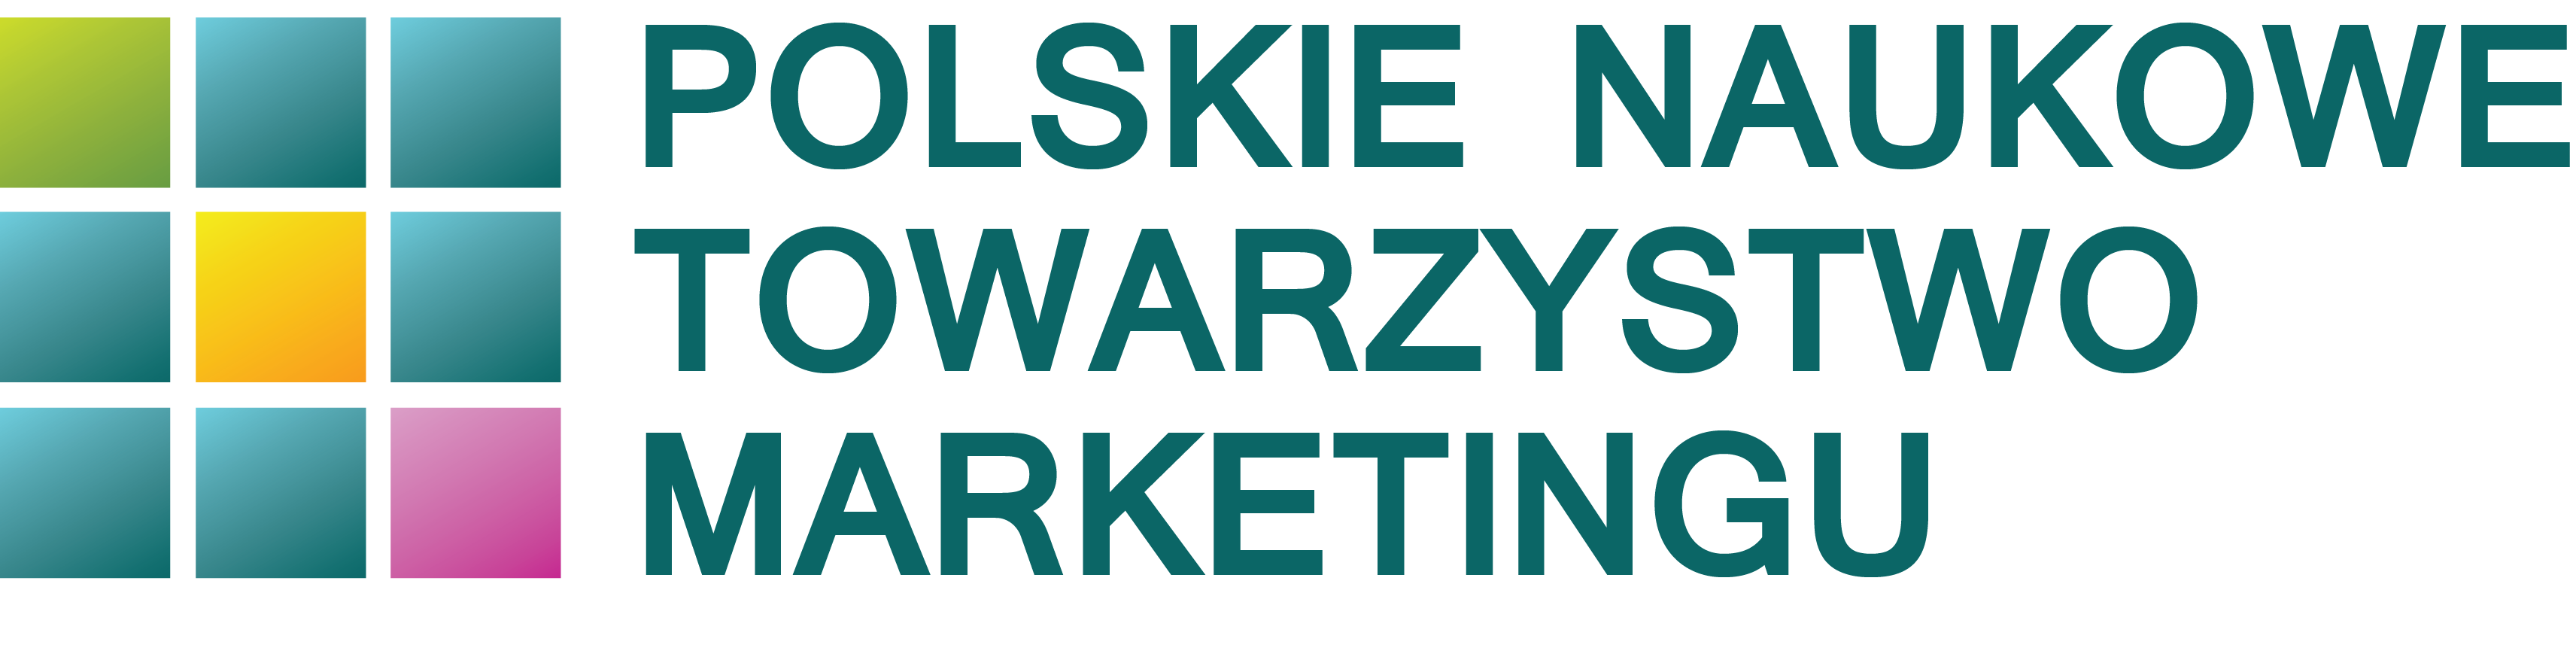 Logo: Polskie Naukowe Towarzystwo Marketingu